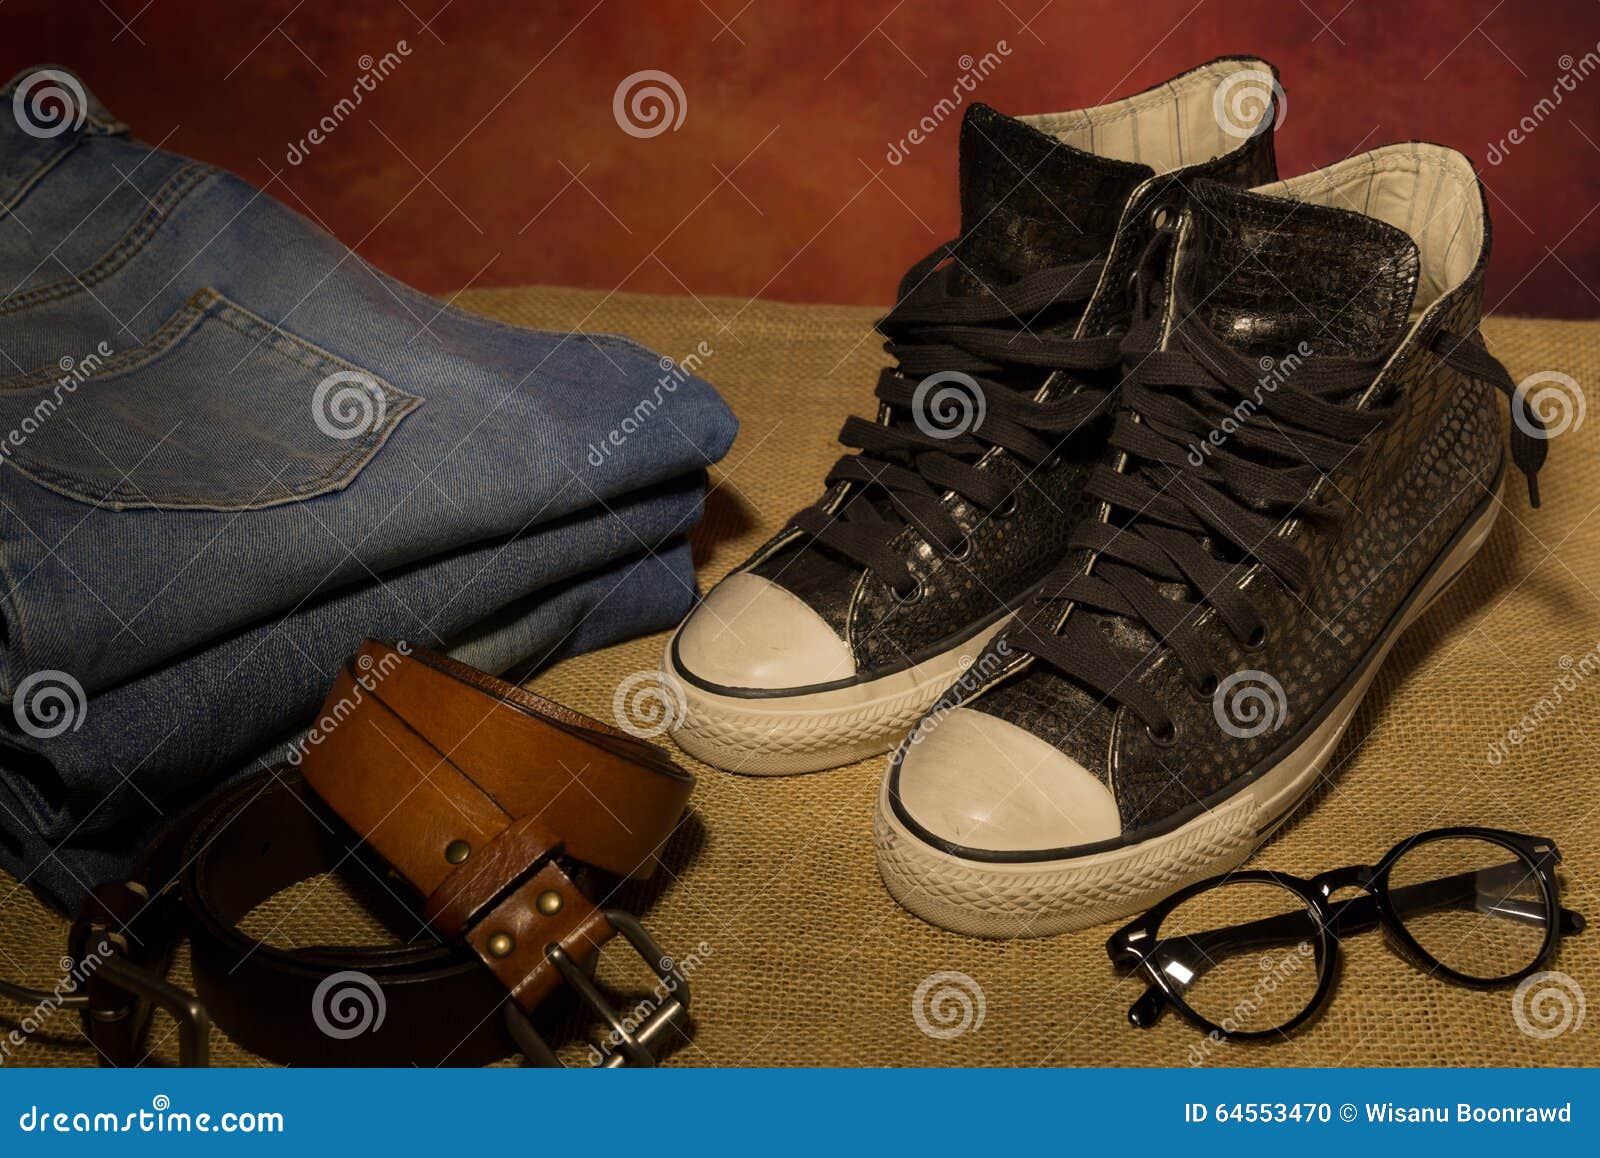 Ботинки натюрморта черные, ботинки. Аксессуары людей натюрморта, черные ботинки, коричневый кожаный пояс, джинсы, ботинки